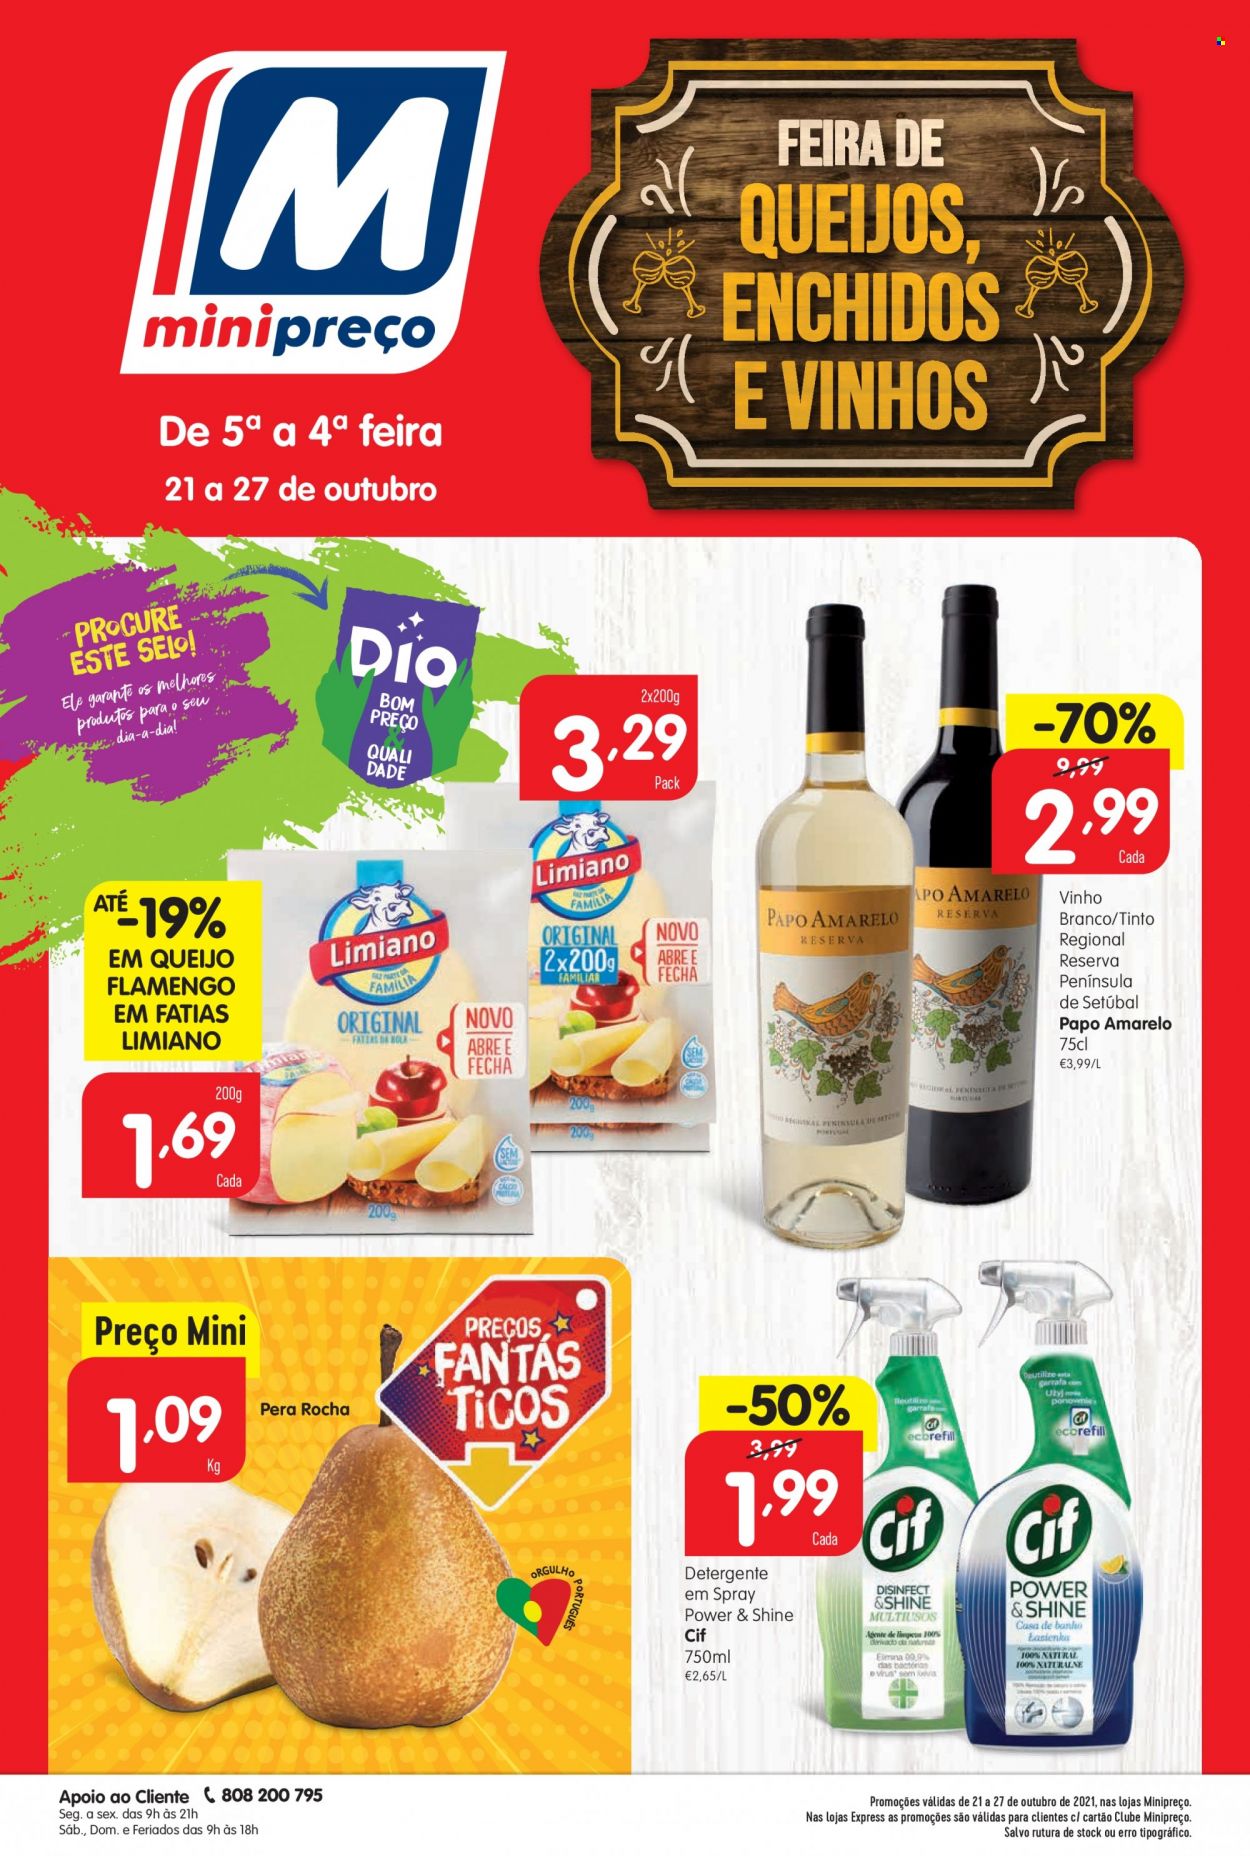 thumbnail - Folheto Minipreço - 21.10.2021 - 27.10.2021 - Produtos em promoção - queijo flamengo, vinho, detergente, Cif, garrafa. Página 1.